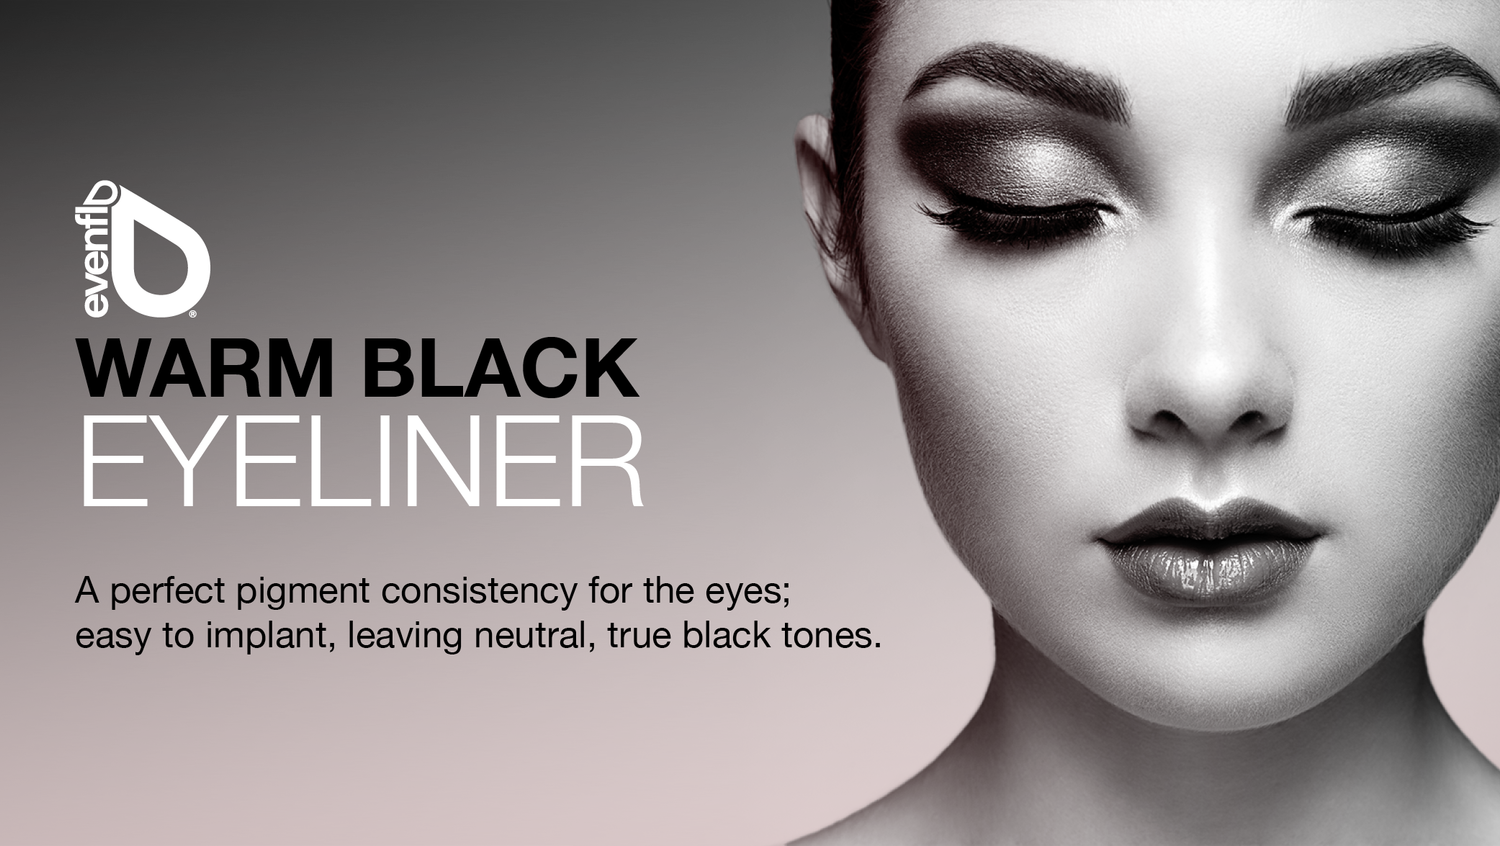 Evenflo_Warm_Black_Eyeliner_Desktop_Product_Top_Banner_1500.png